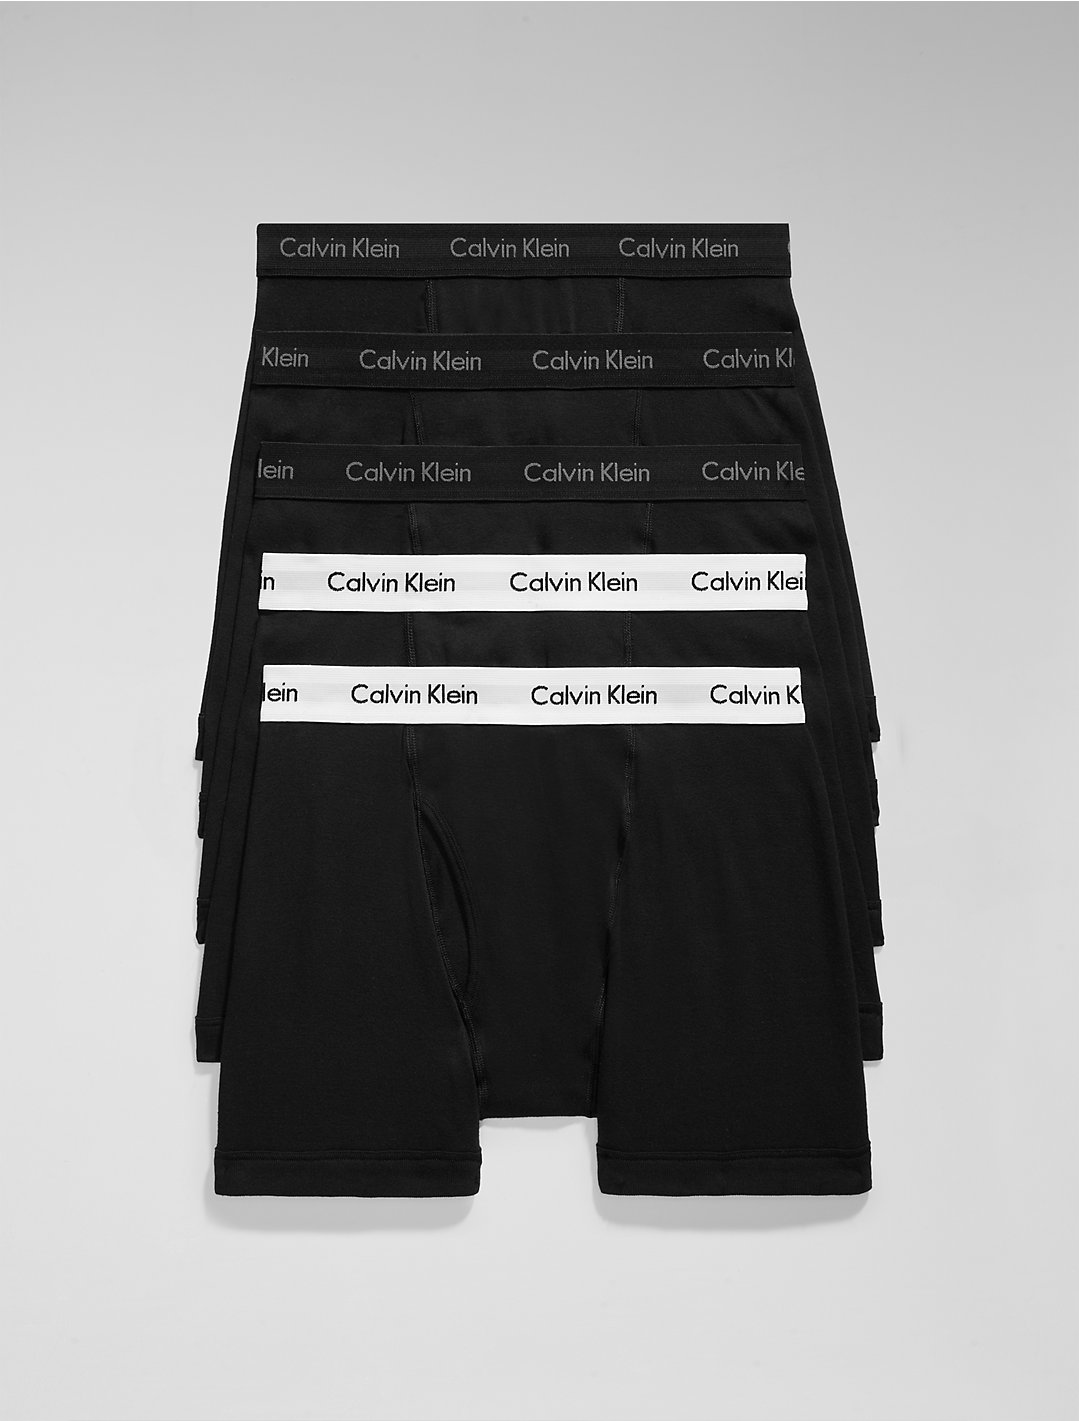 vorm Opwekking groep Cotton Classics 5-Pack Boxer Brief | Calvin Klein